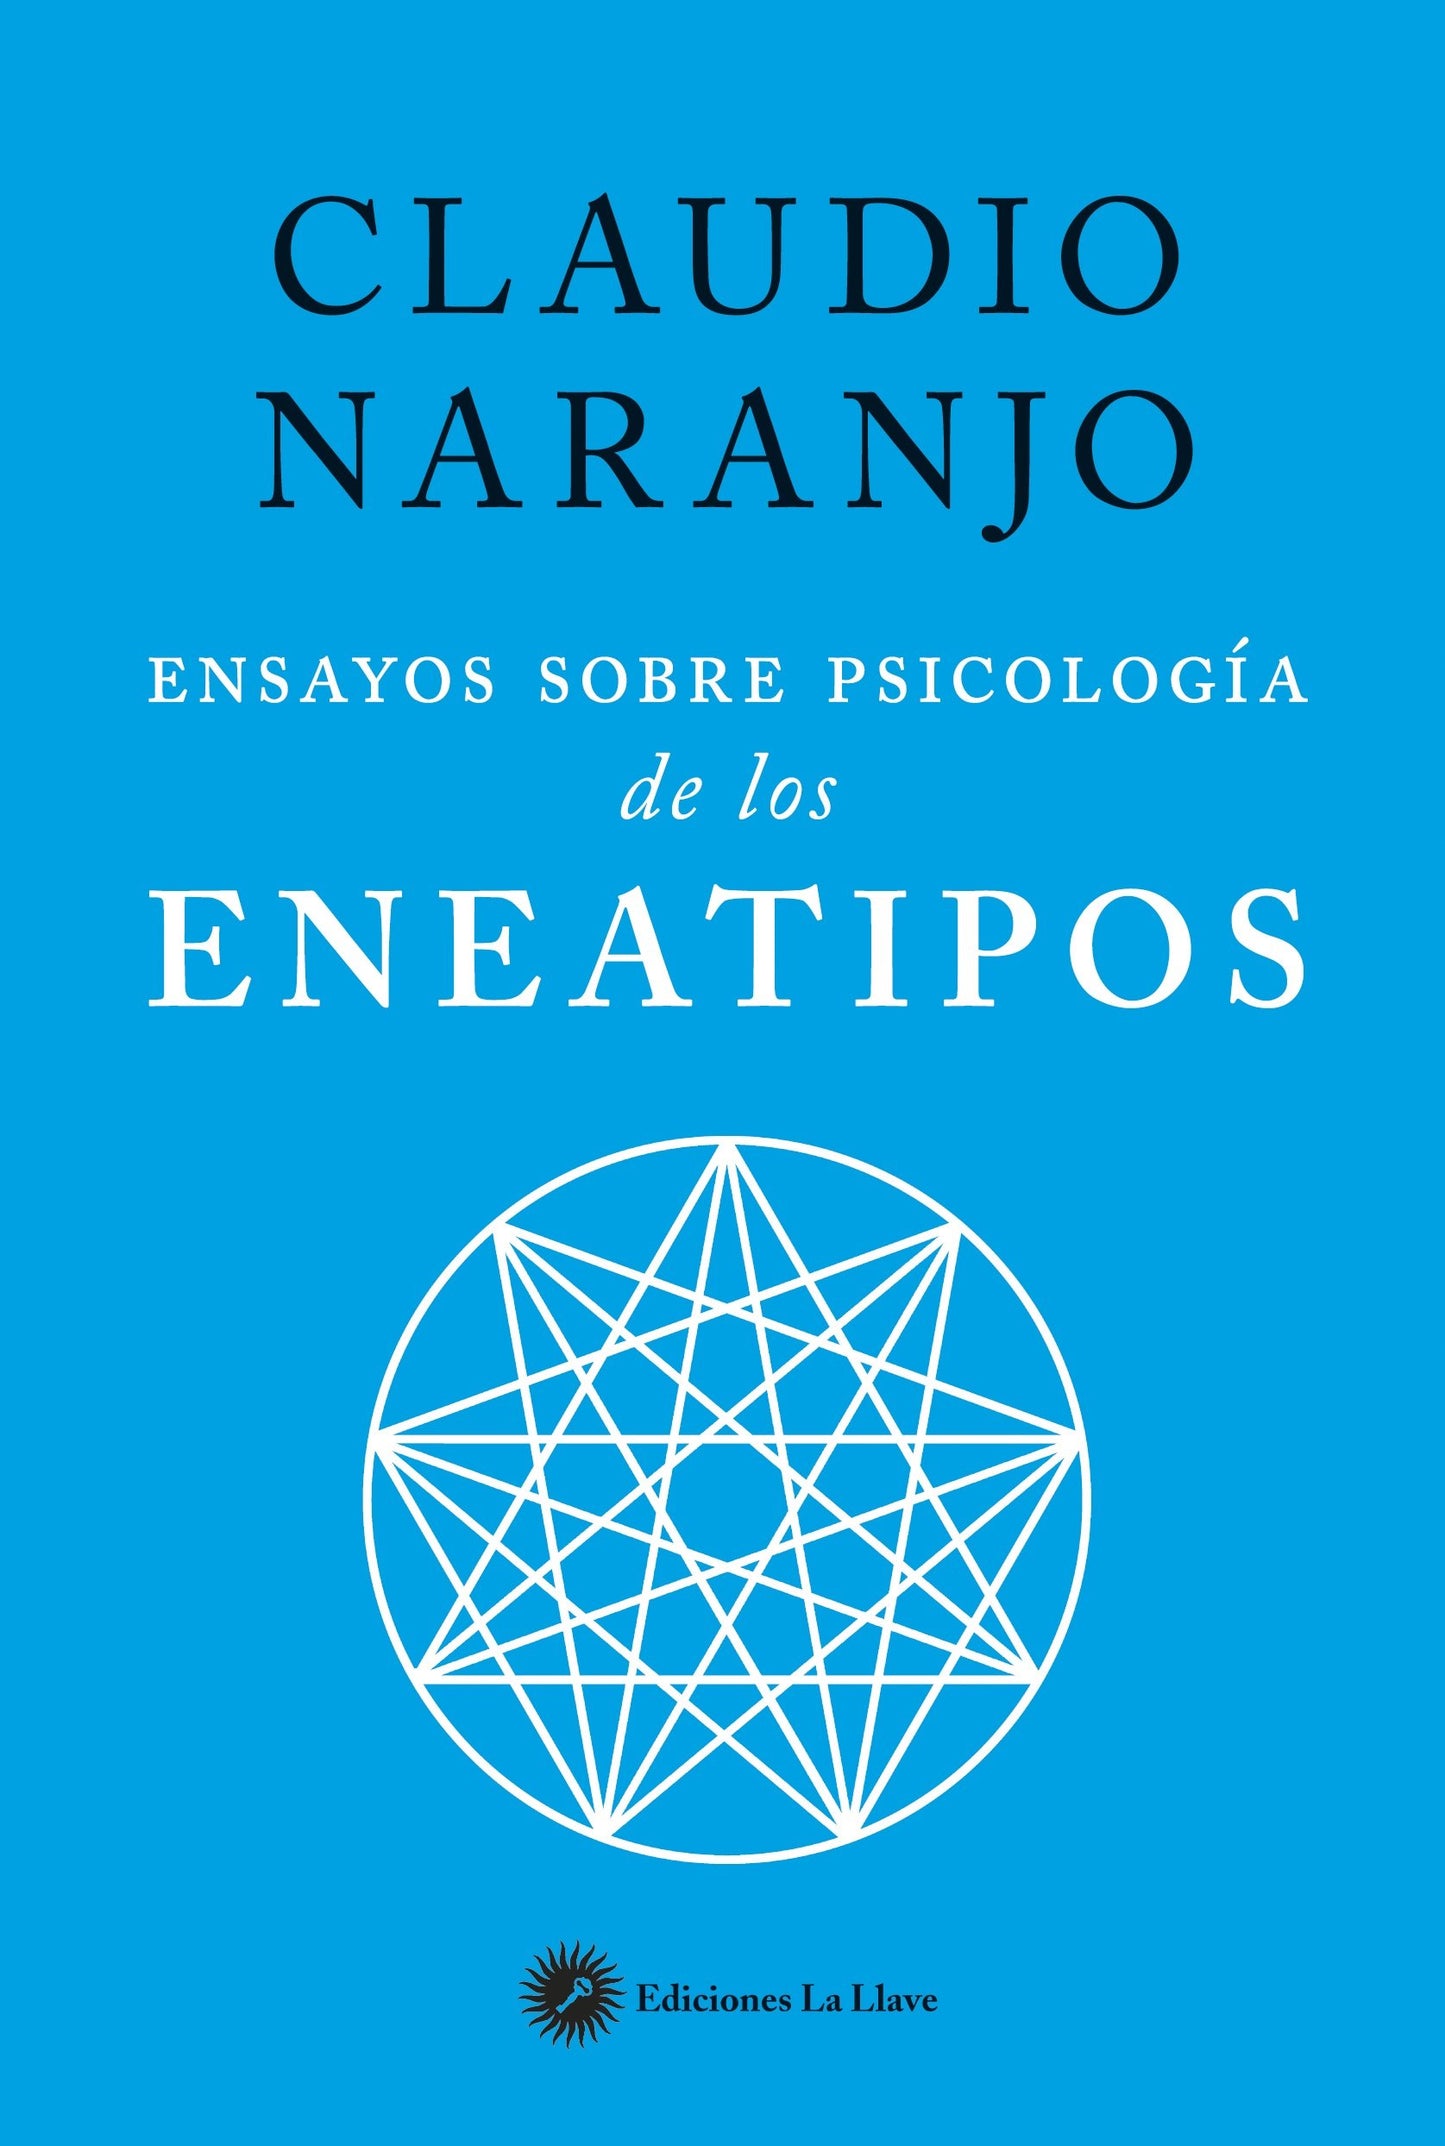 Ensayos sobre psicología de los eneatipos - Claudio Naranjo